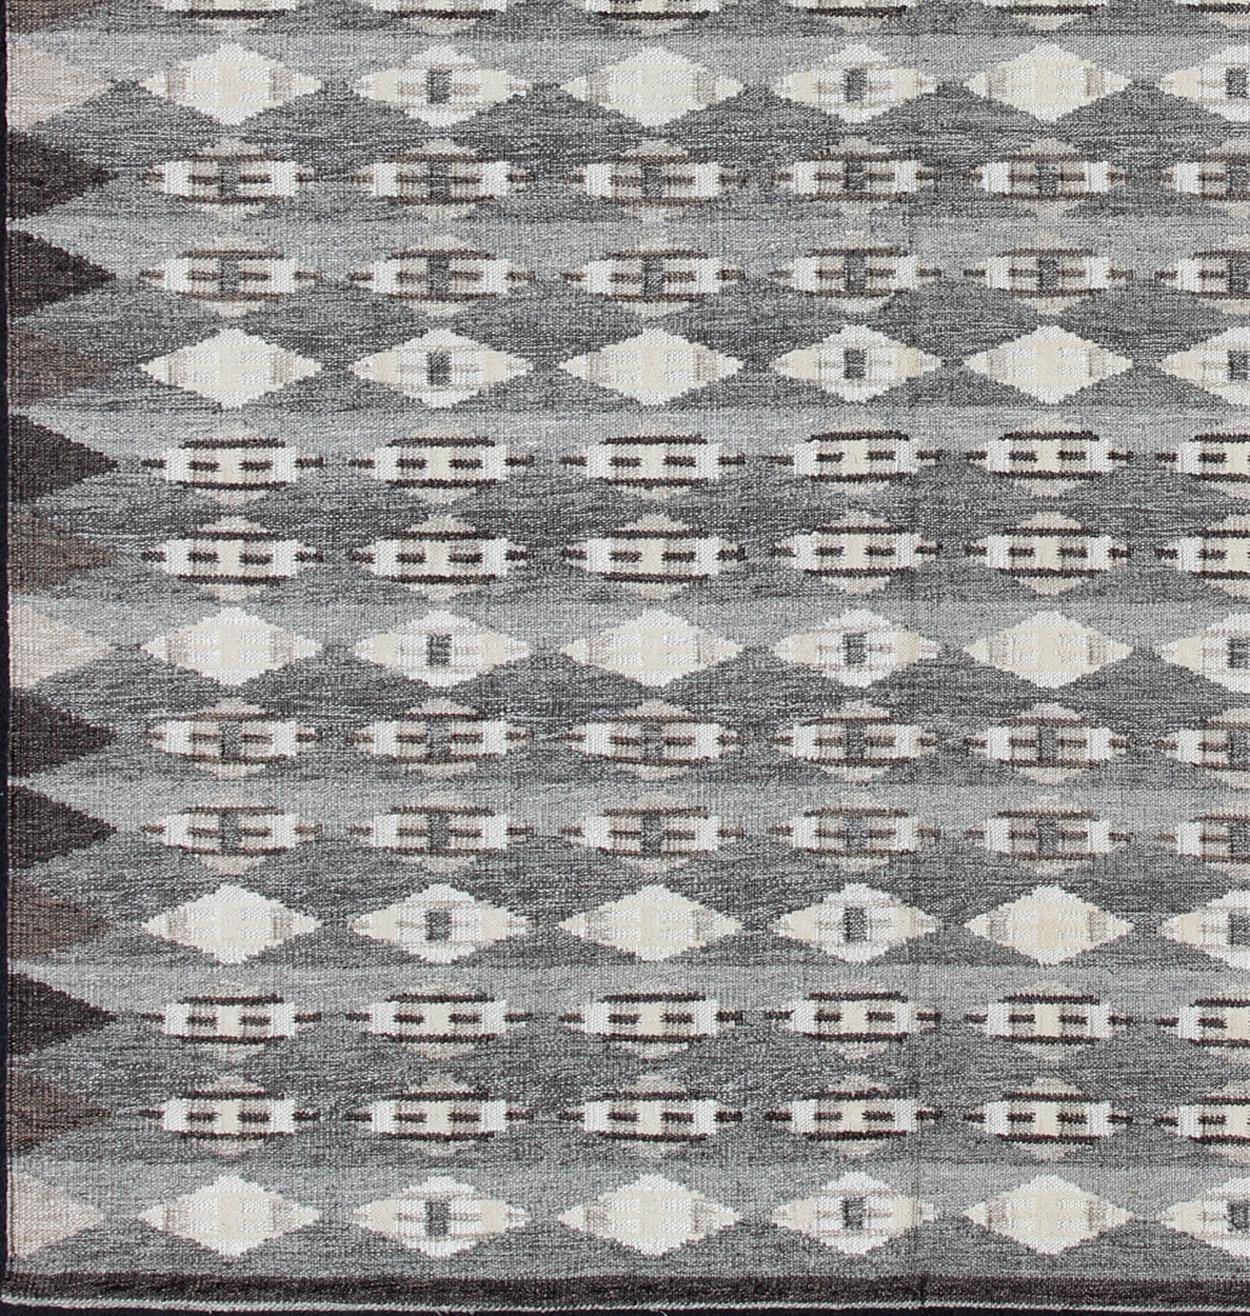 Grand tapis scandinave moderne à tissage plat et au design géométrique en gris et brun.  Rug/KHN-502-SW-09, Ce tapis scandinave à tissage plat s'inspire du travail des designers textiles suédois du début au milieu du XXe siècle. Avec un mélange